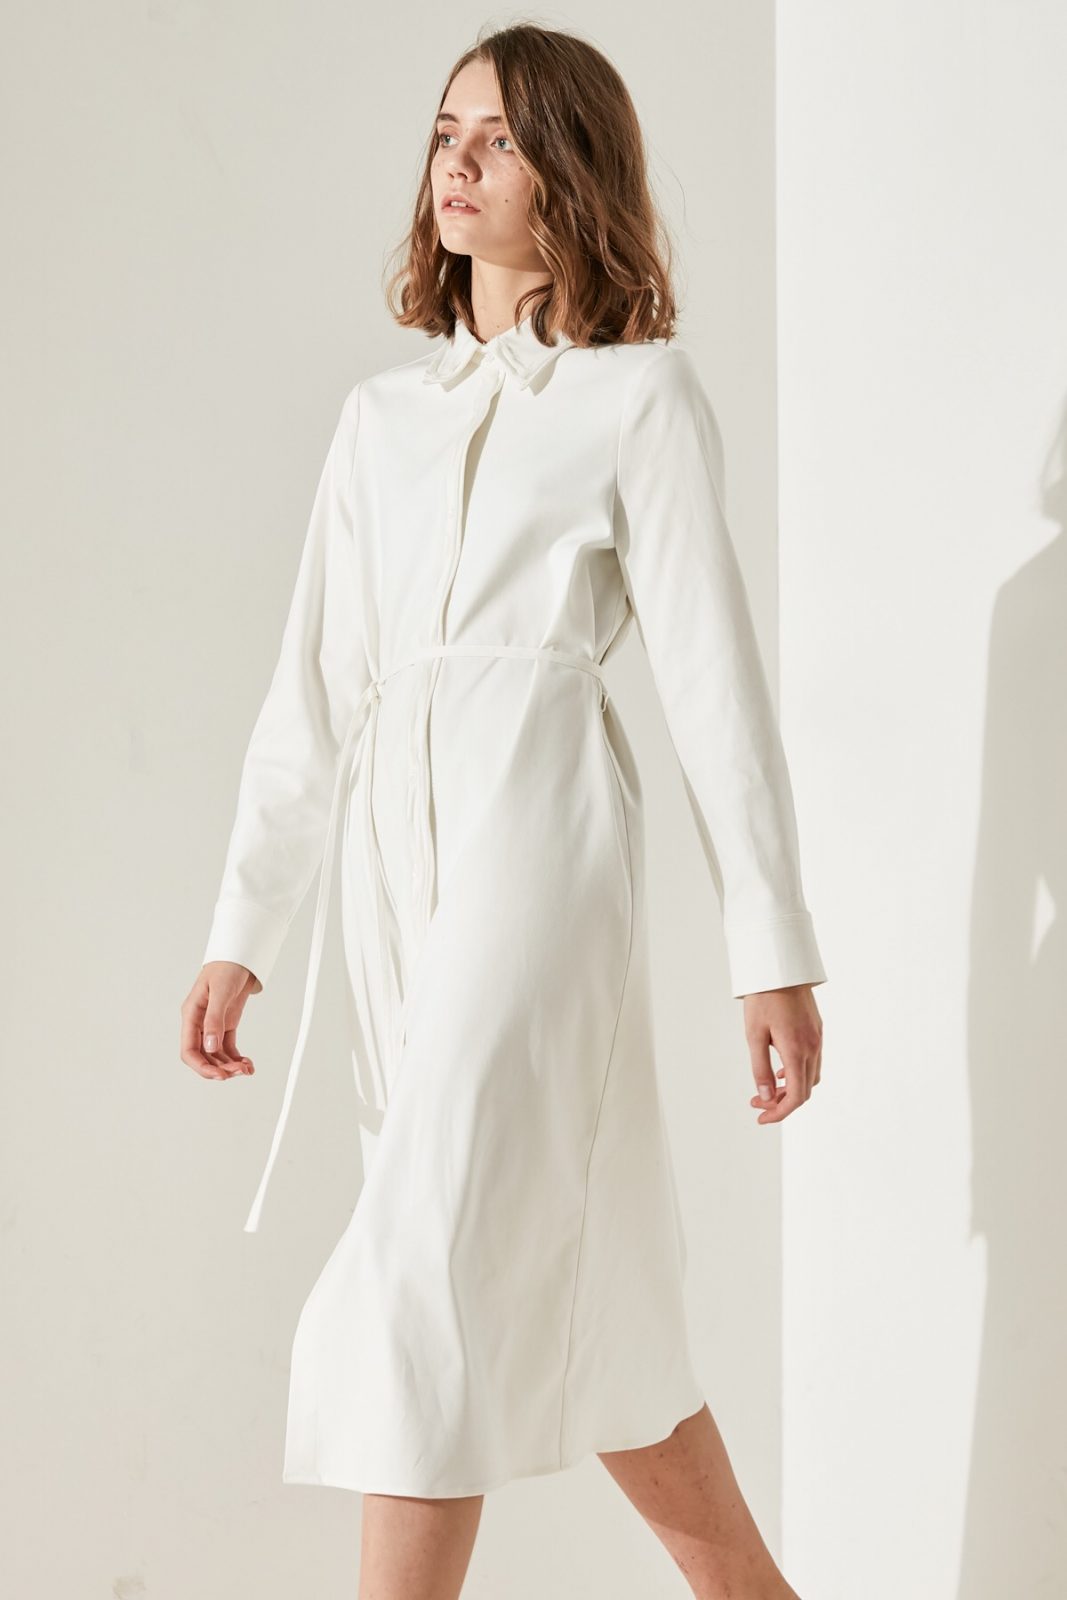 SKYE minimalist women clothing fashion Katie Chiffon Dress white 5